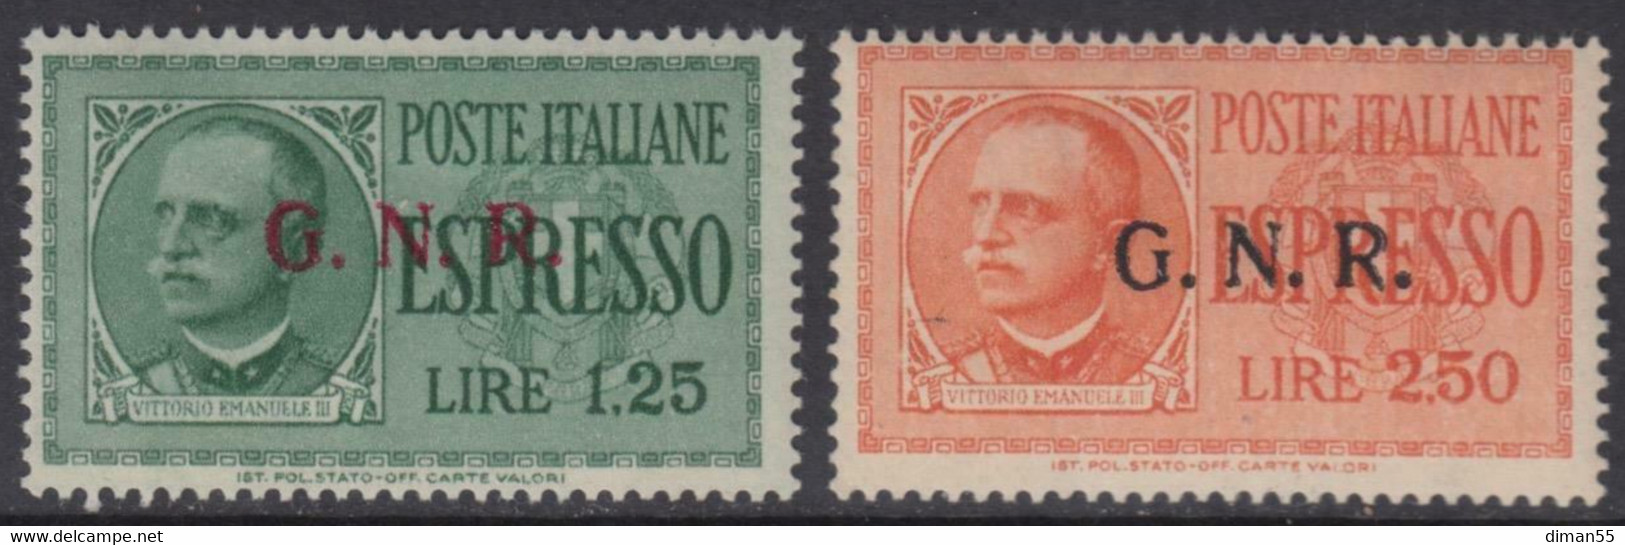 Italy - 1944 R.S.I. - Espressi N.19-20 Tiratura Di Verona - Cat. 750 Euro - Firmati Raybaudi  Gomma Integra - MNH** - Posta Espresso